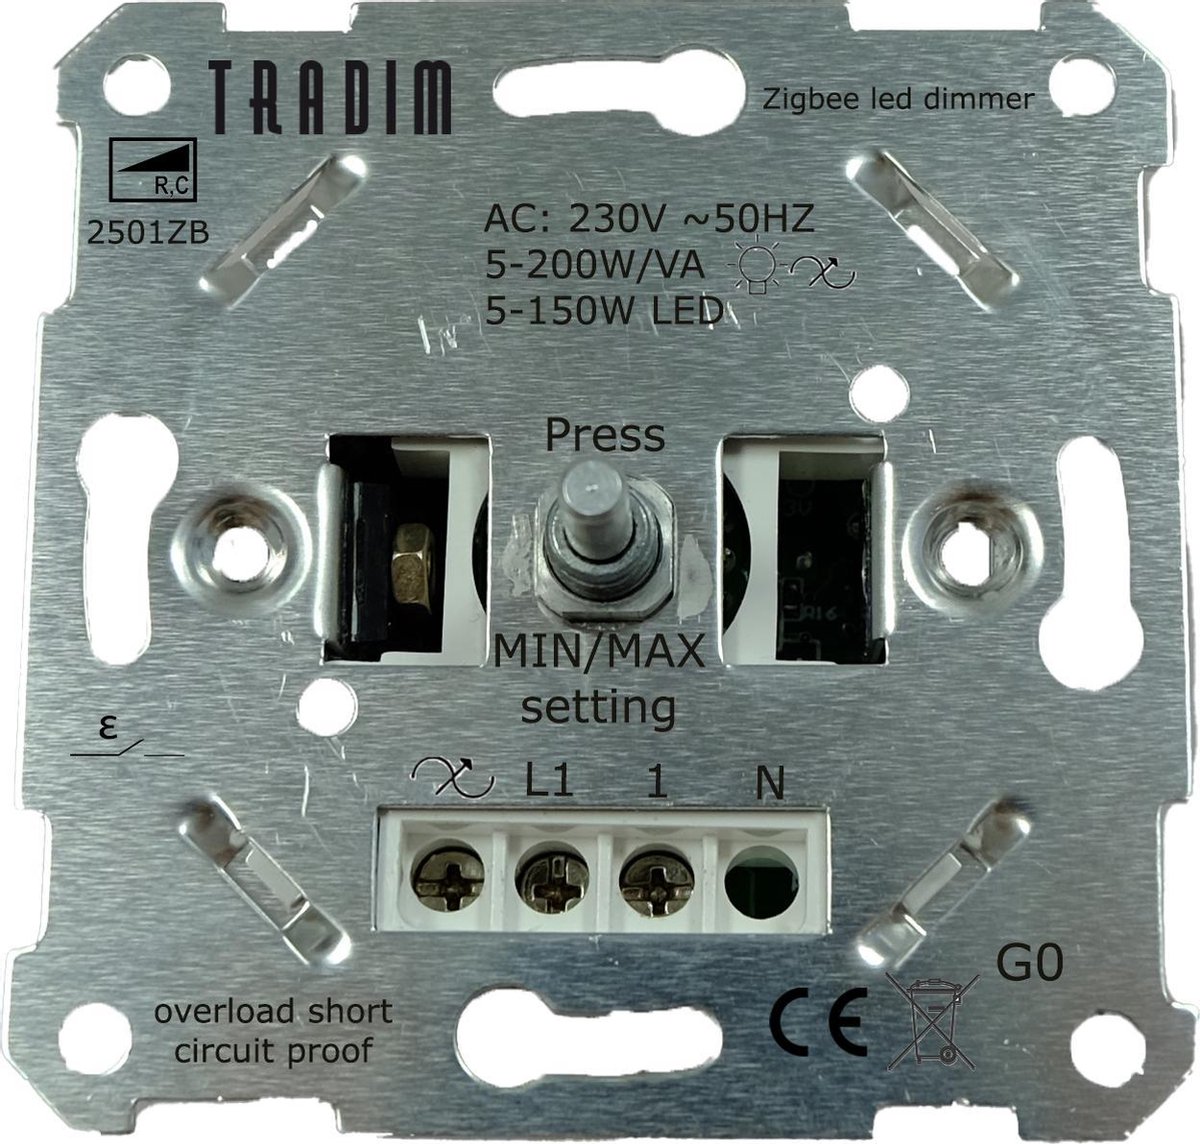 Tradim - Zigbee LED Dimmer inbouw - 5-150W - Fase afsnijding